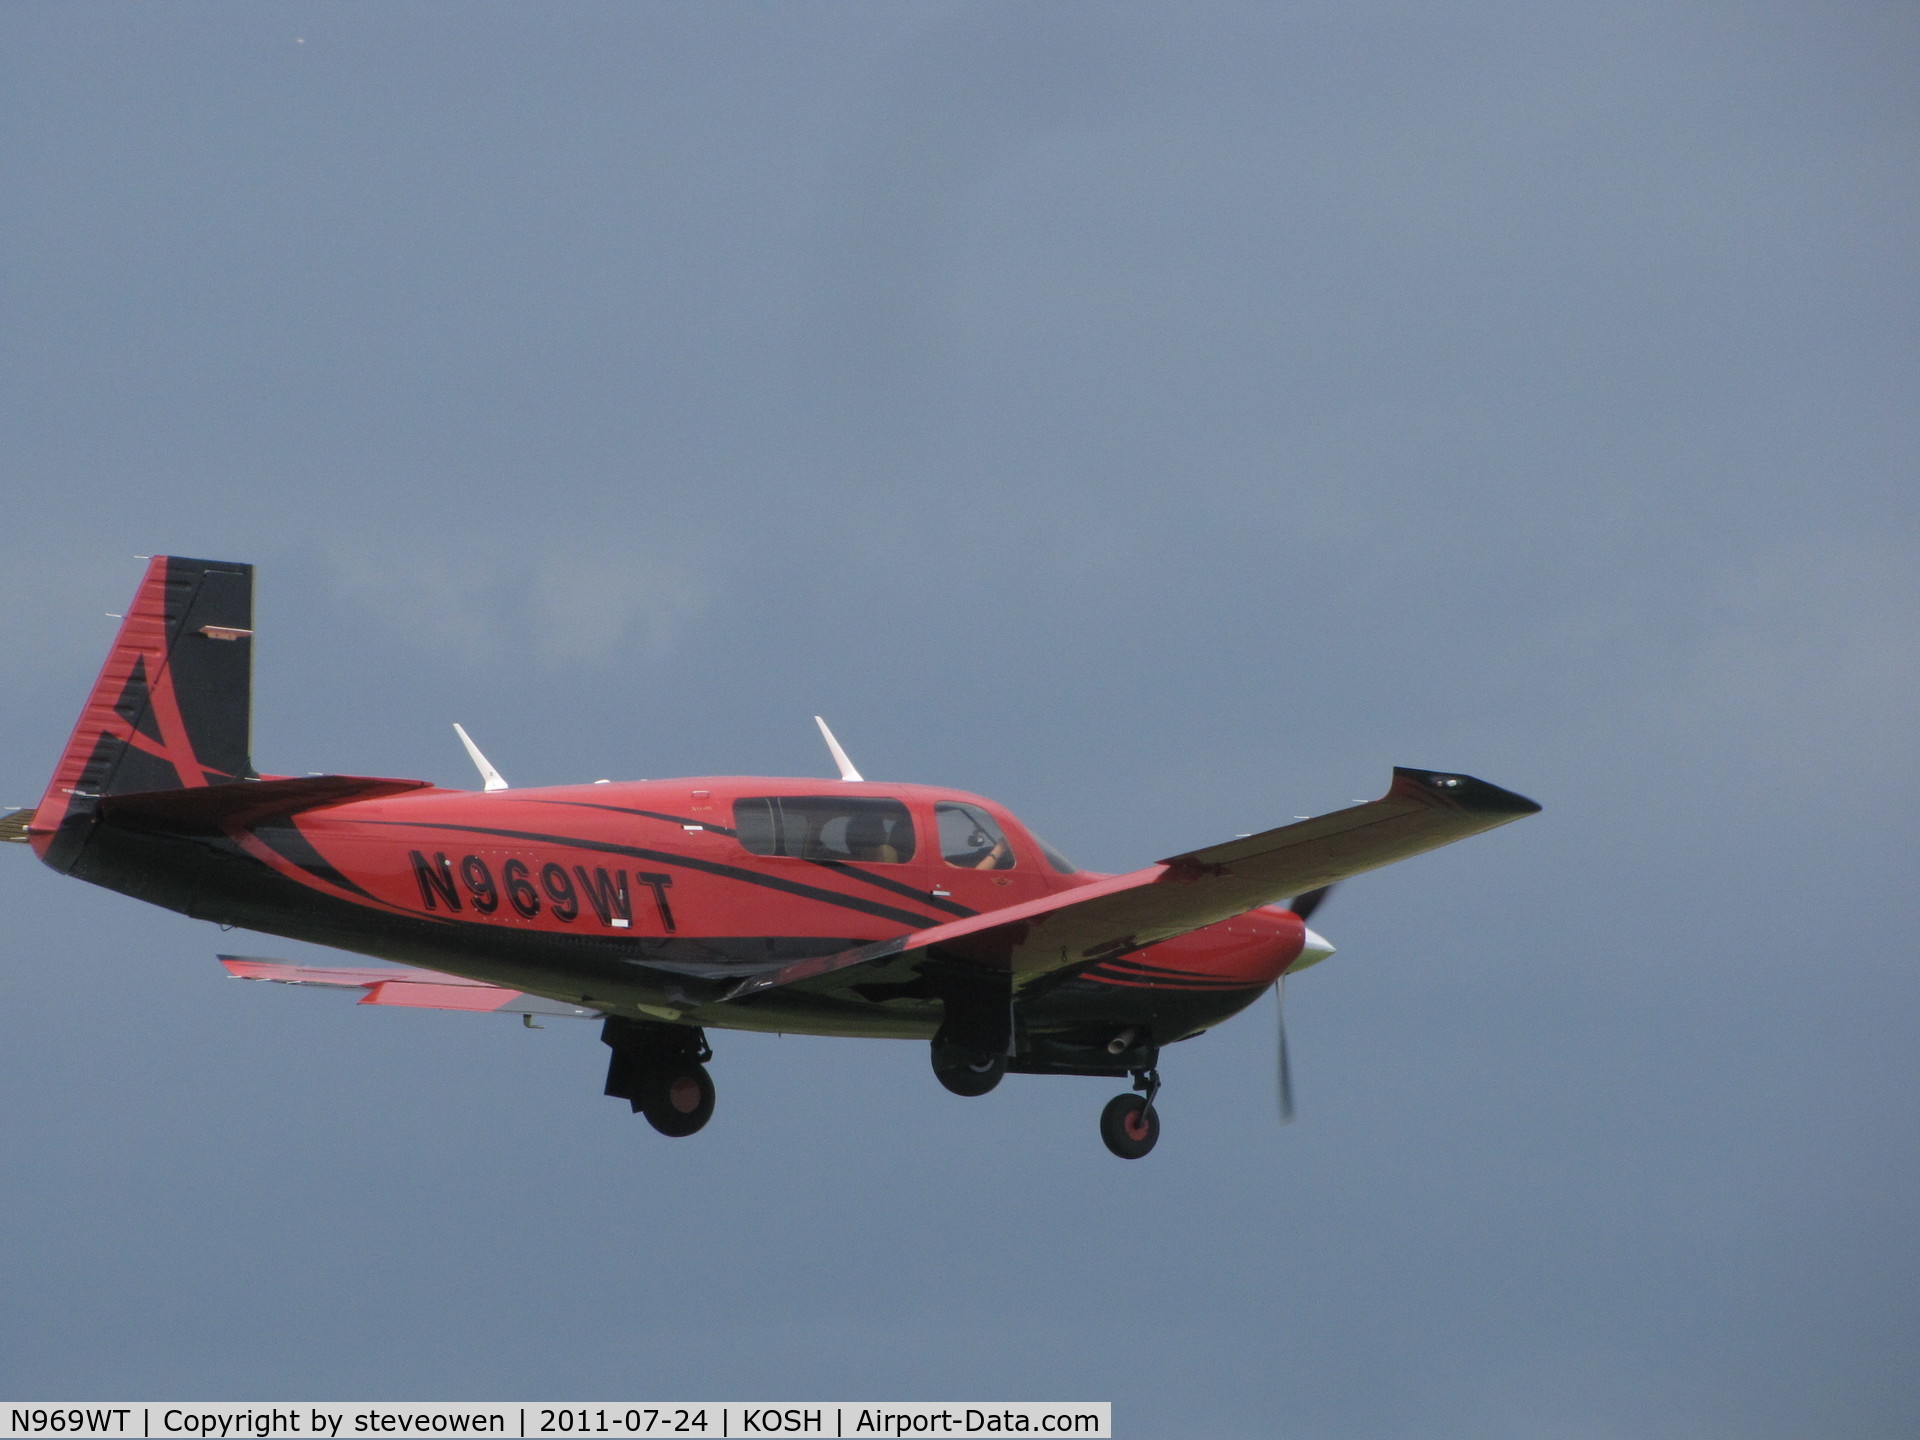 N969WT, 2007 Mooney M20TN Acclaim C/N 31-0051, landing at KOSH during EAA2011